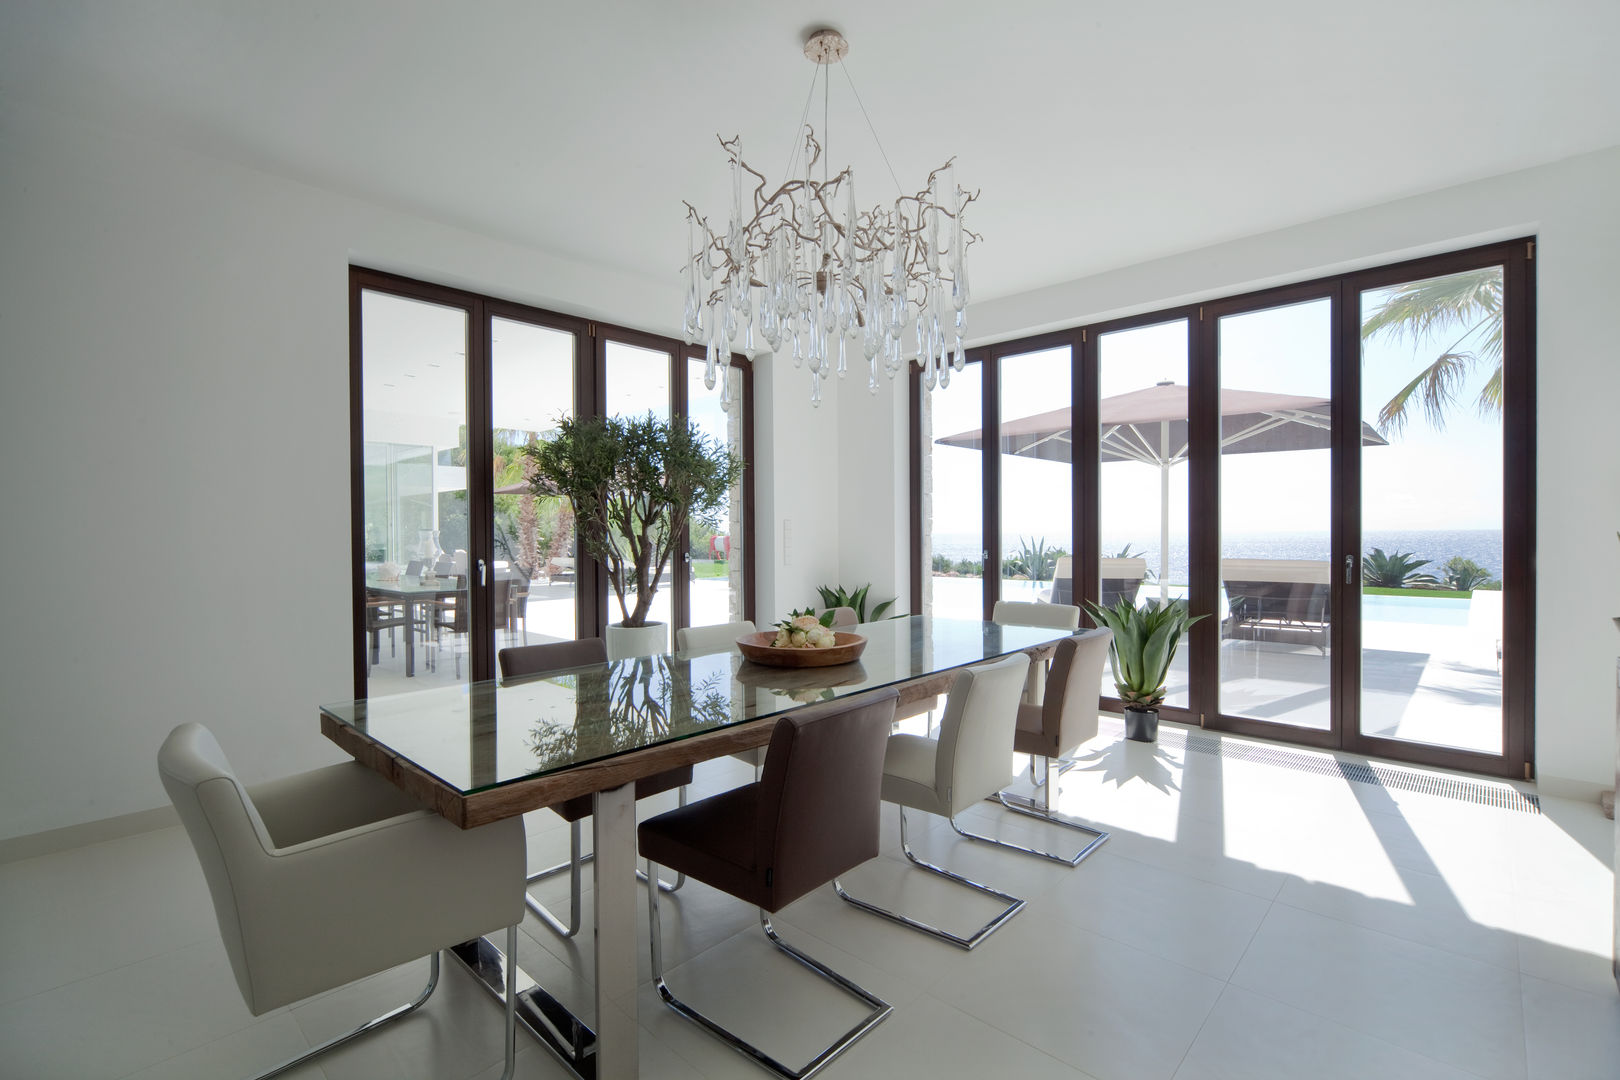 0812, jle architekten jle architekten Mediterranean style dining room